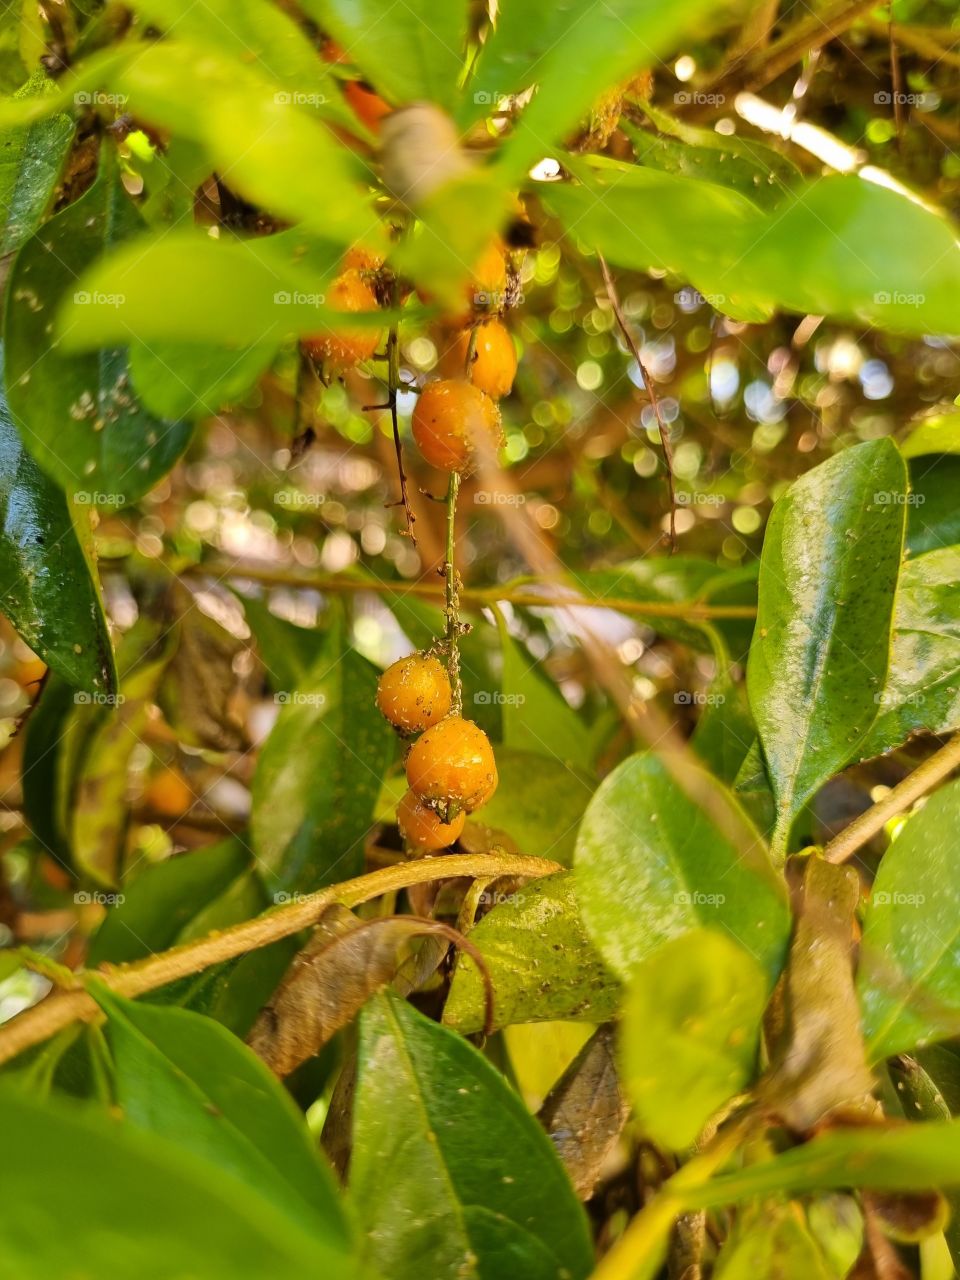 weird little buds hanging on a tree